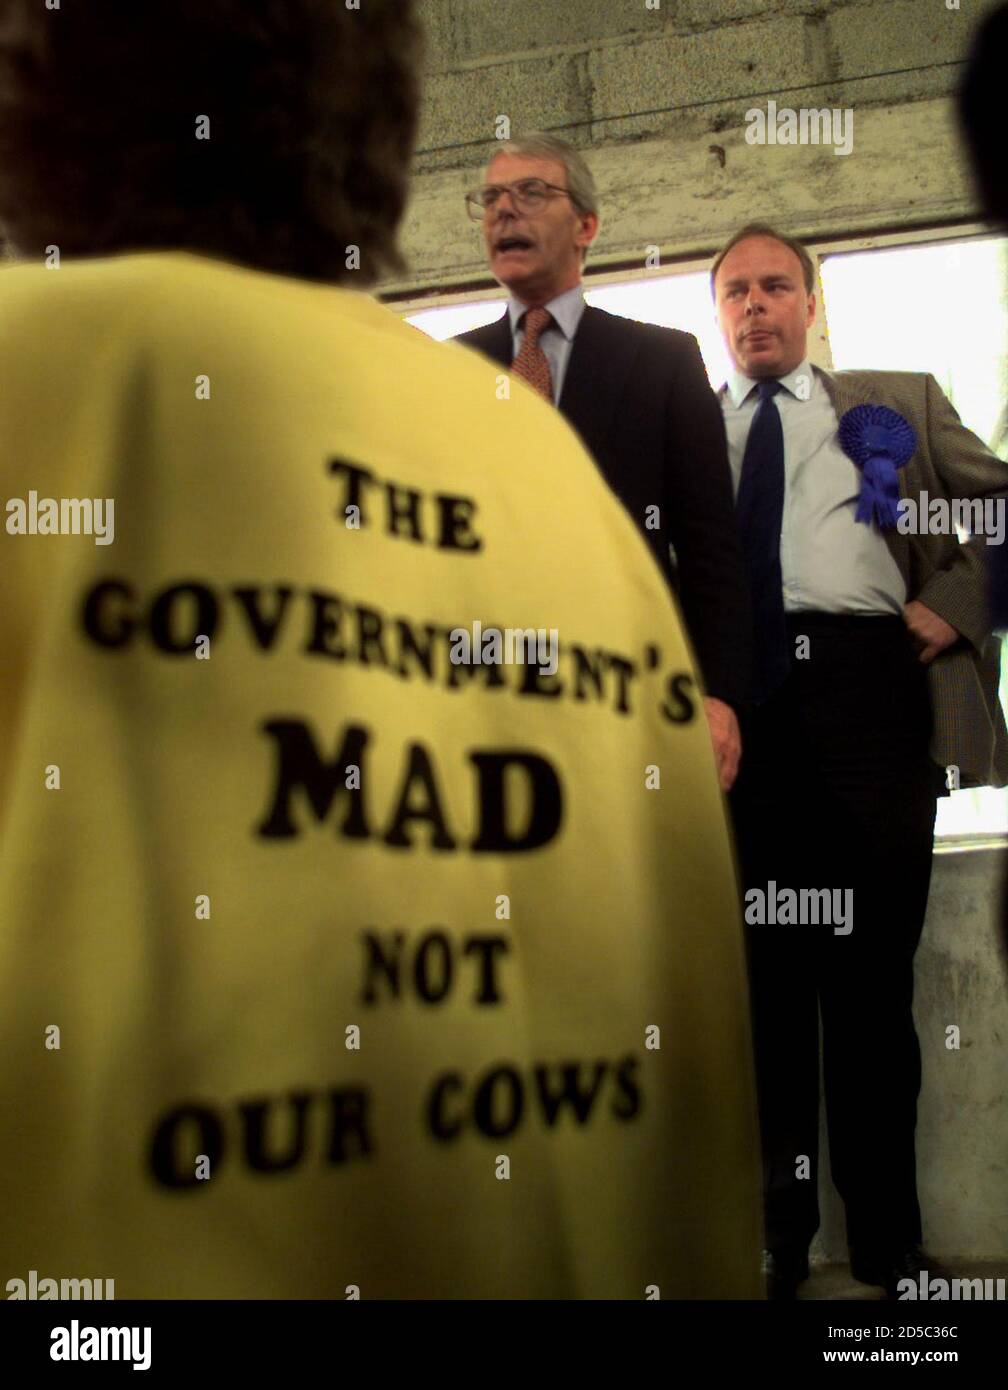 Premierminister John Major spricht die Bauern an, als eine Frau in einem Hemd mit dem Slogan "die Regierung ist verrückt, nicht unsere Kühe" April 15 anschaut. Neben ihm ist der konservative Kandidat Ian Liddell-Grainger. Major besucht im Rahmen seines Wahlkampfs den Südwesten Großbritanniens. WAHLEN IN GROSSBRITANNIEN Stockfoto